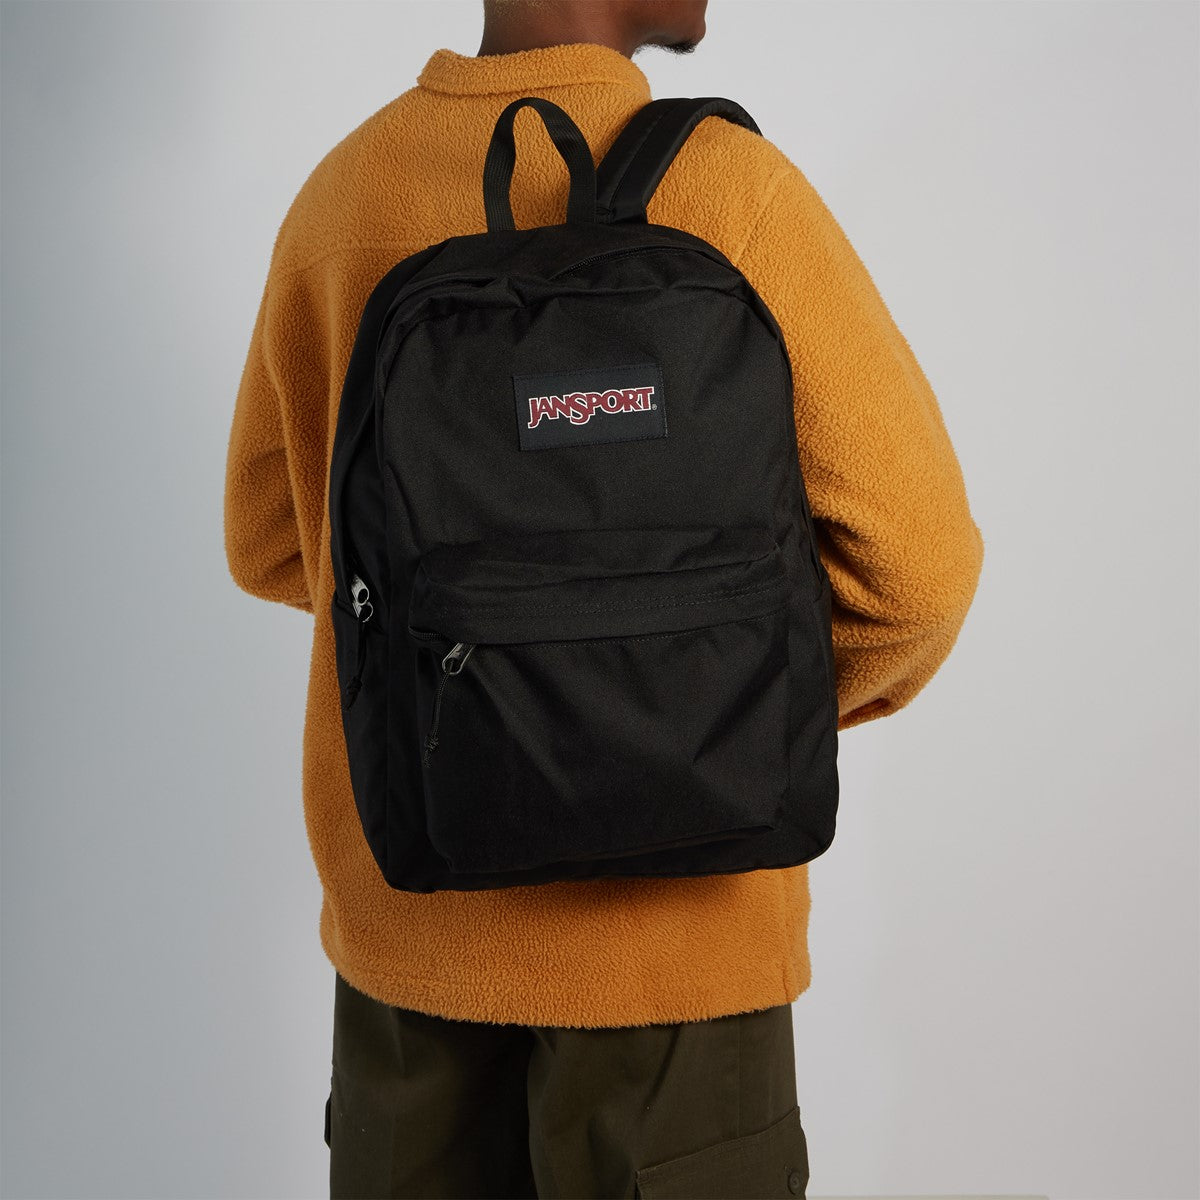 JANSPORT backpack - superbreak size